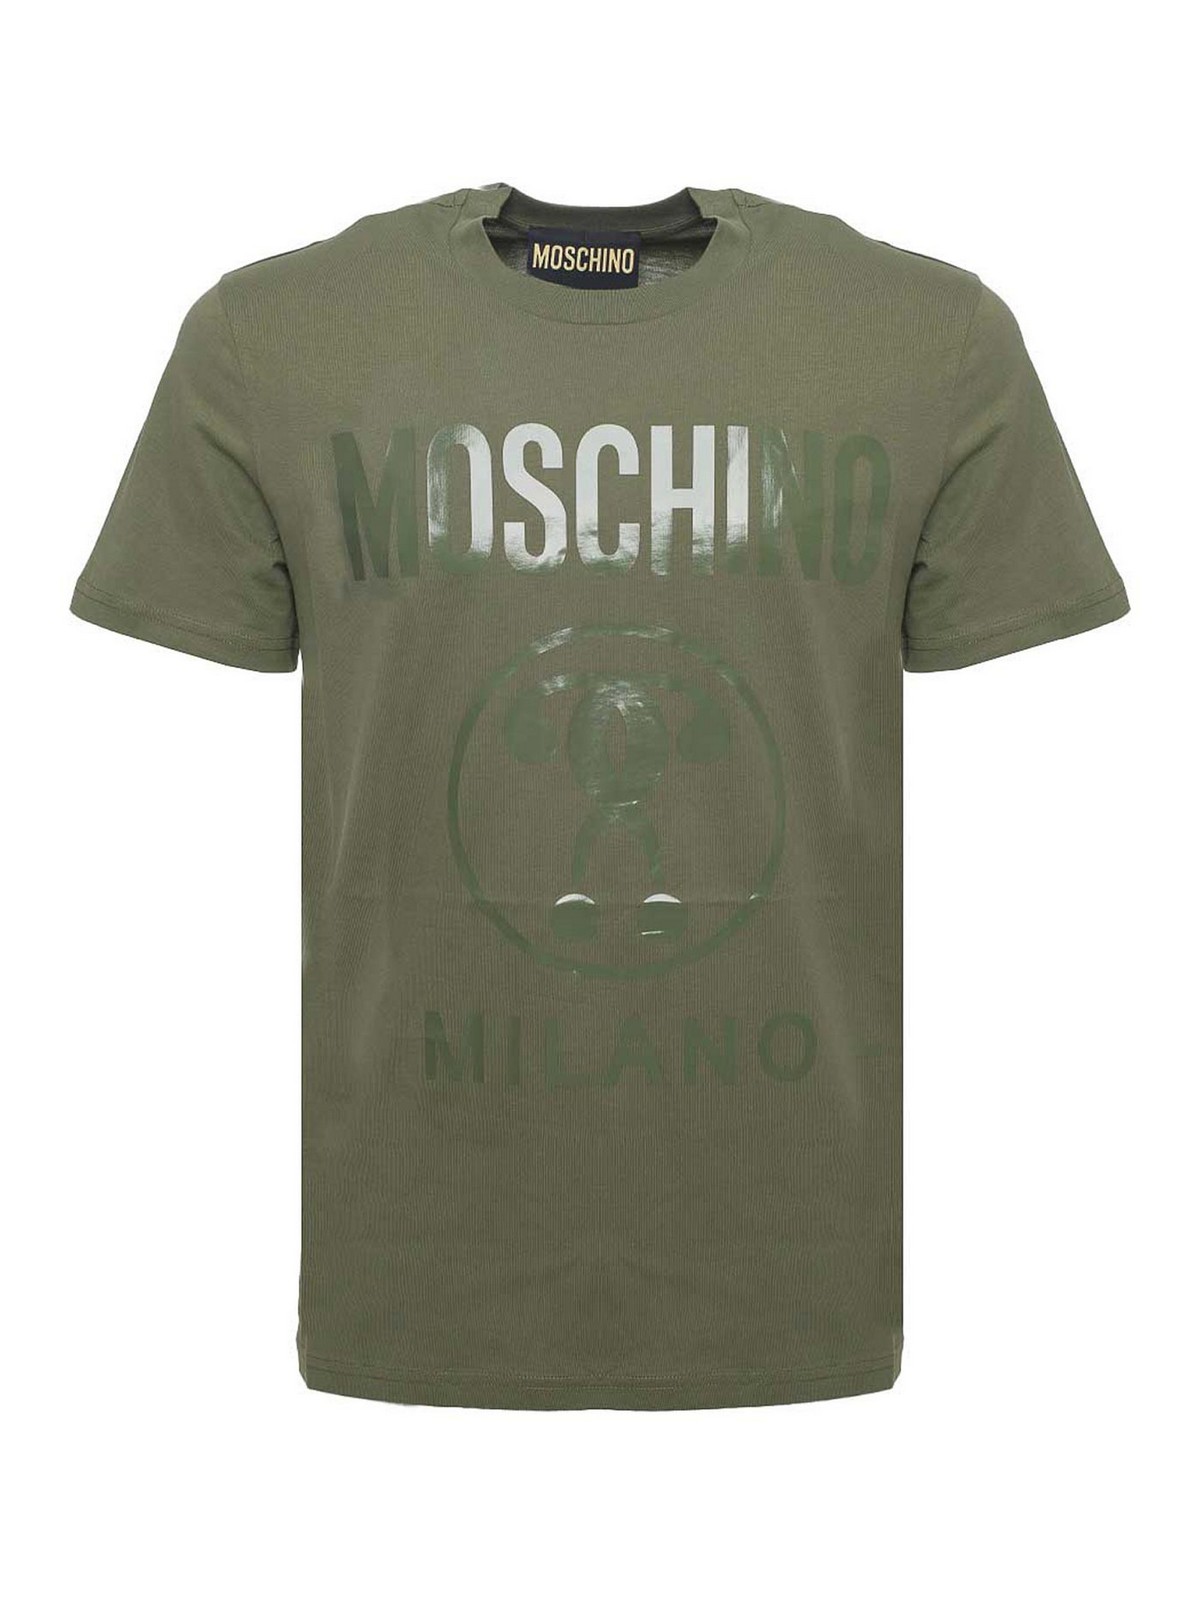 Moschino Military T-shirt In Dark Green